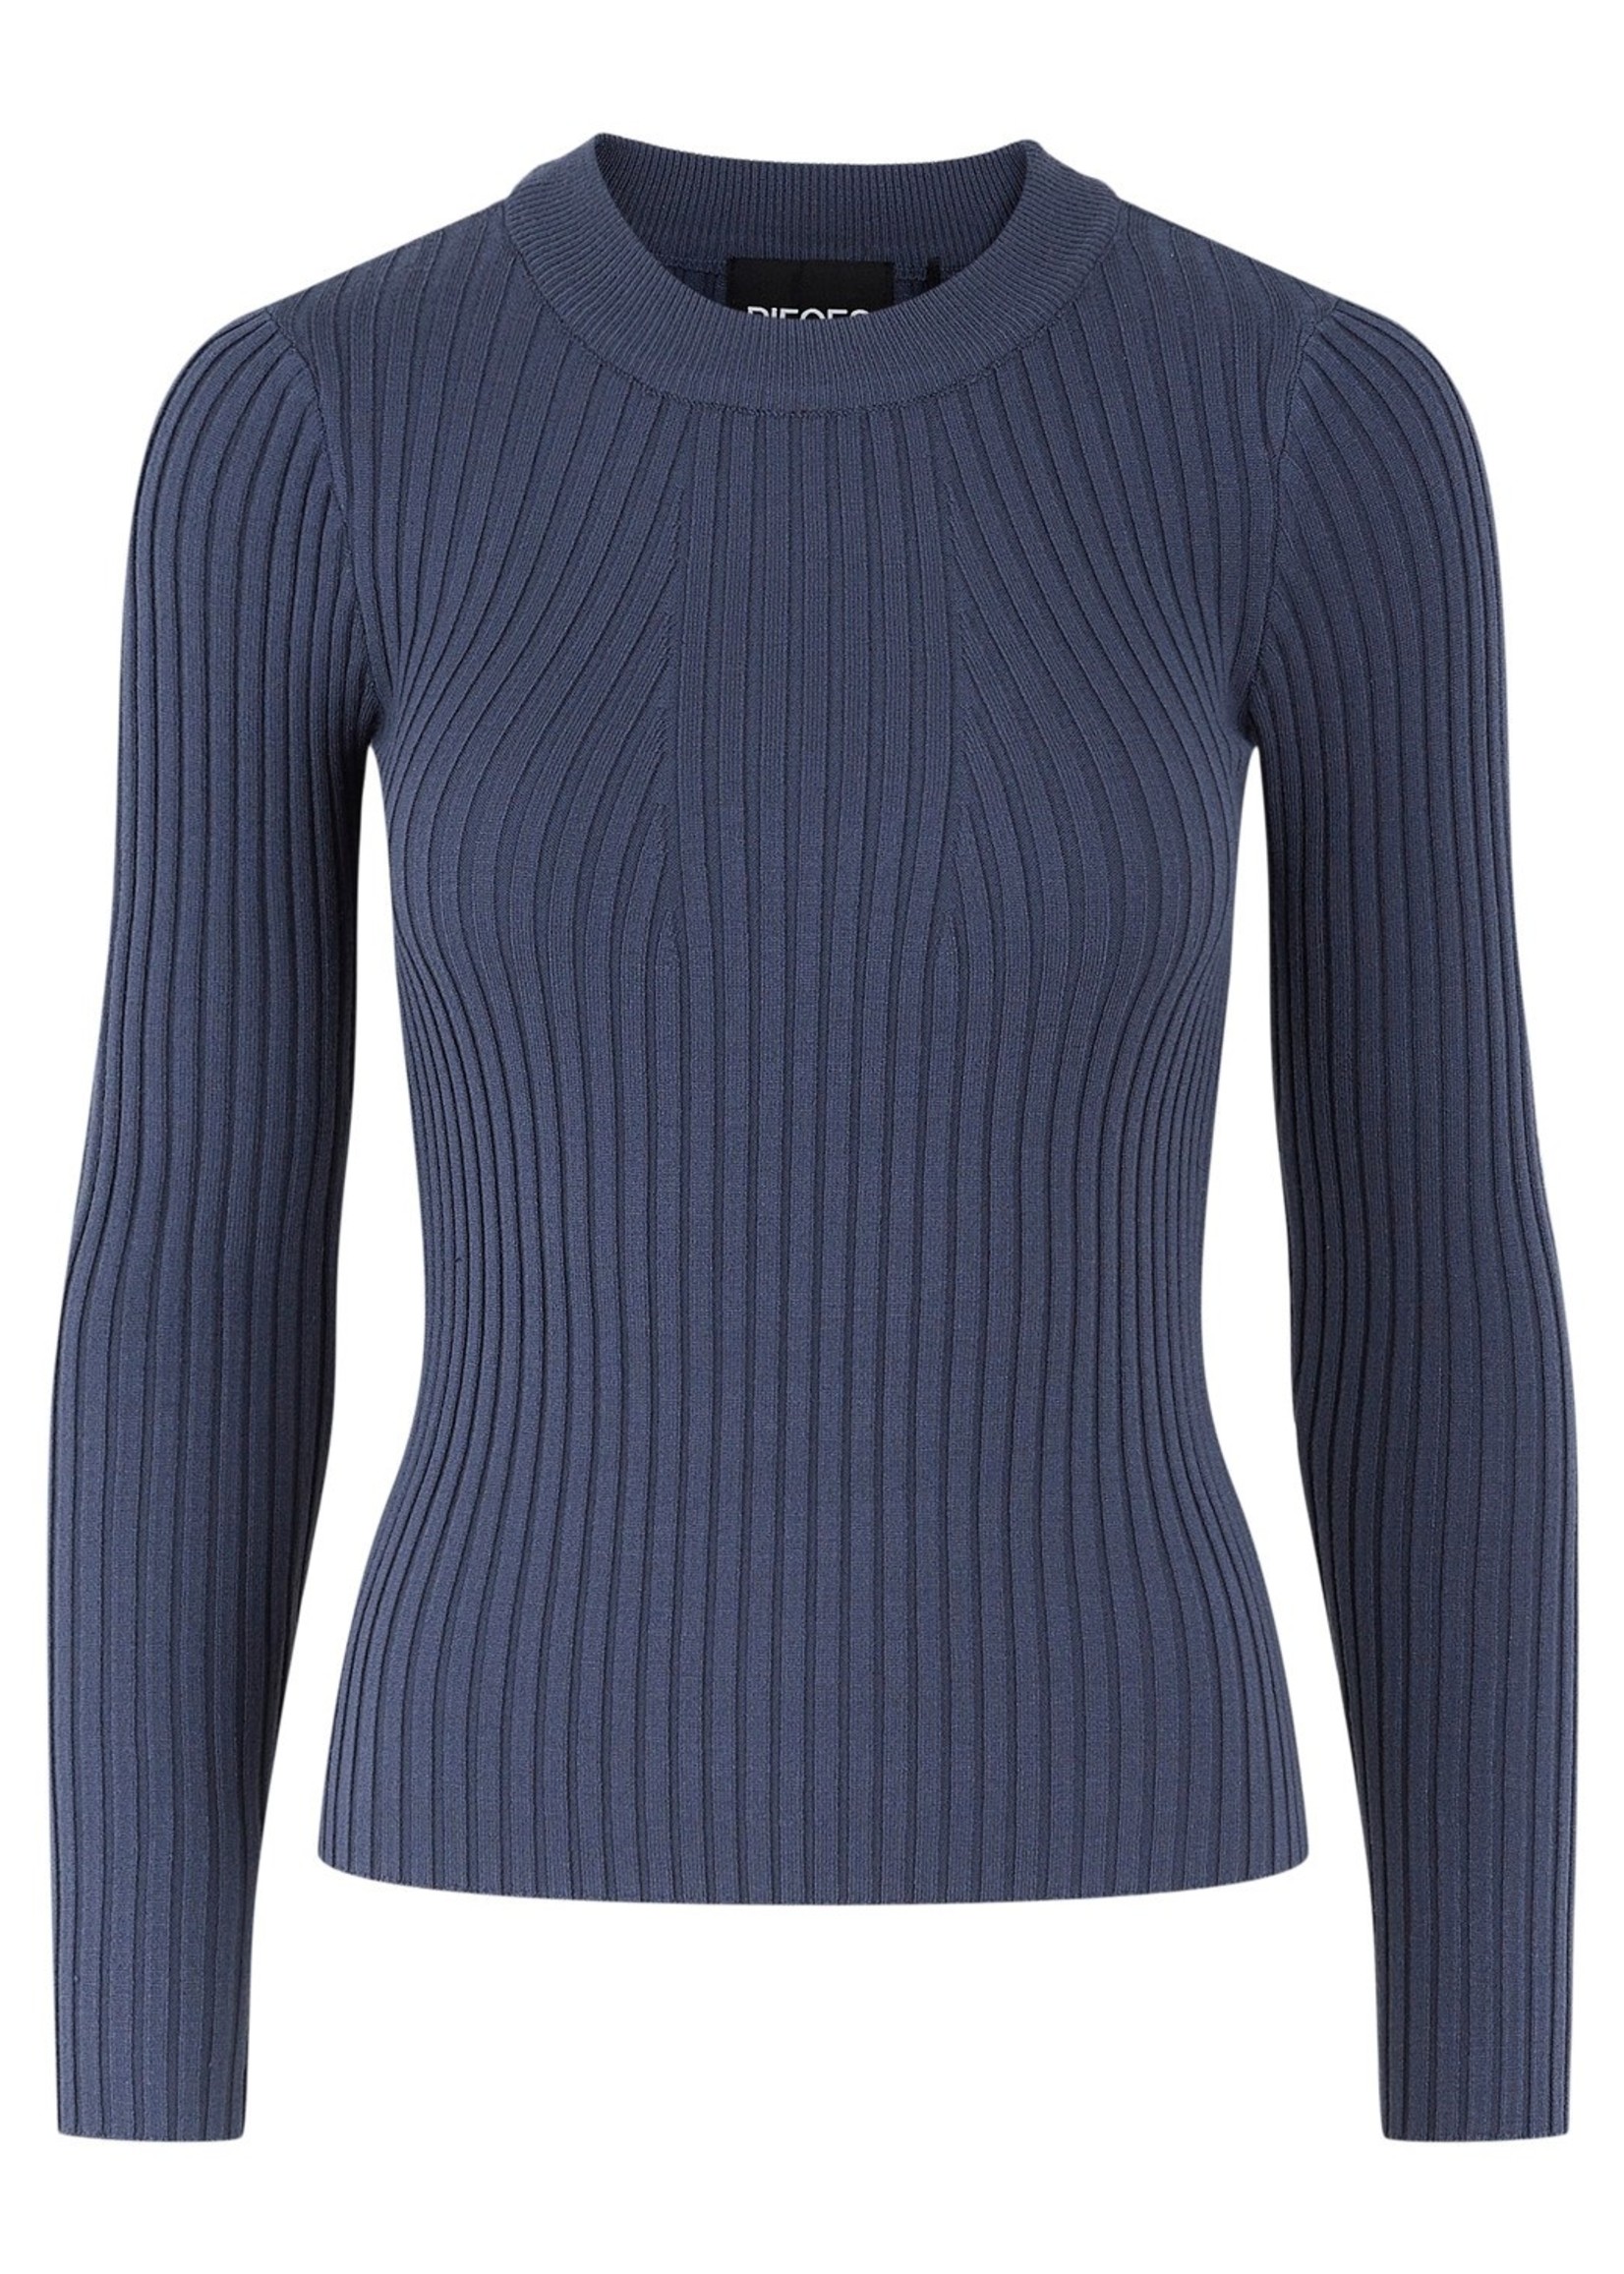 Pieces - Crista neck knit - Ombre blue